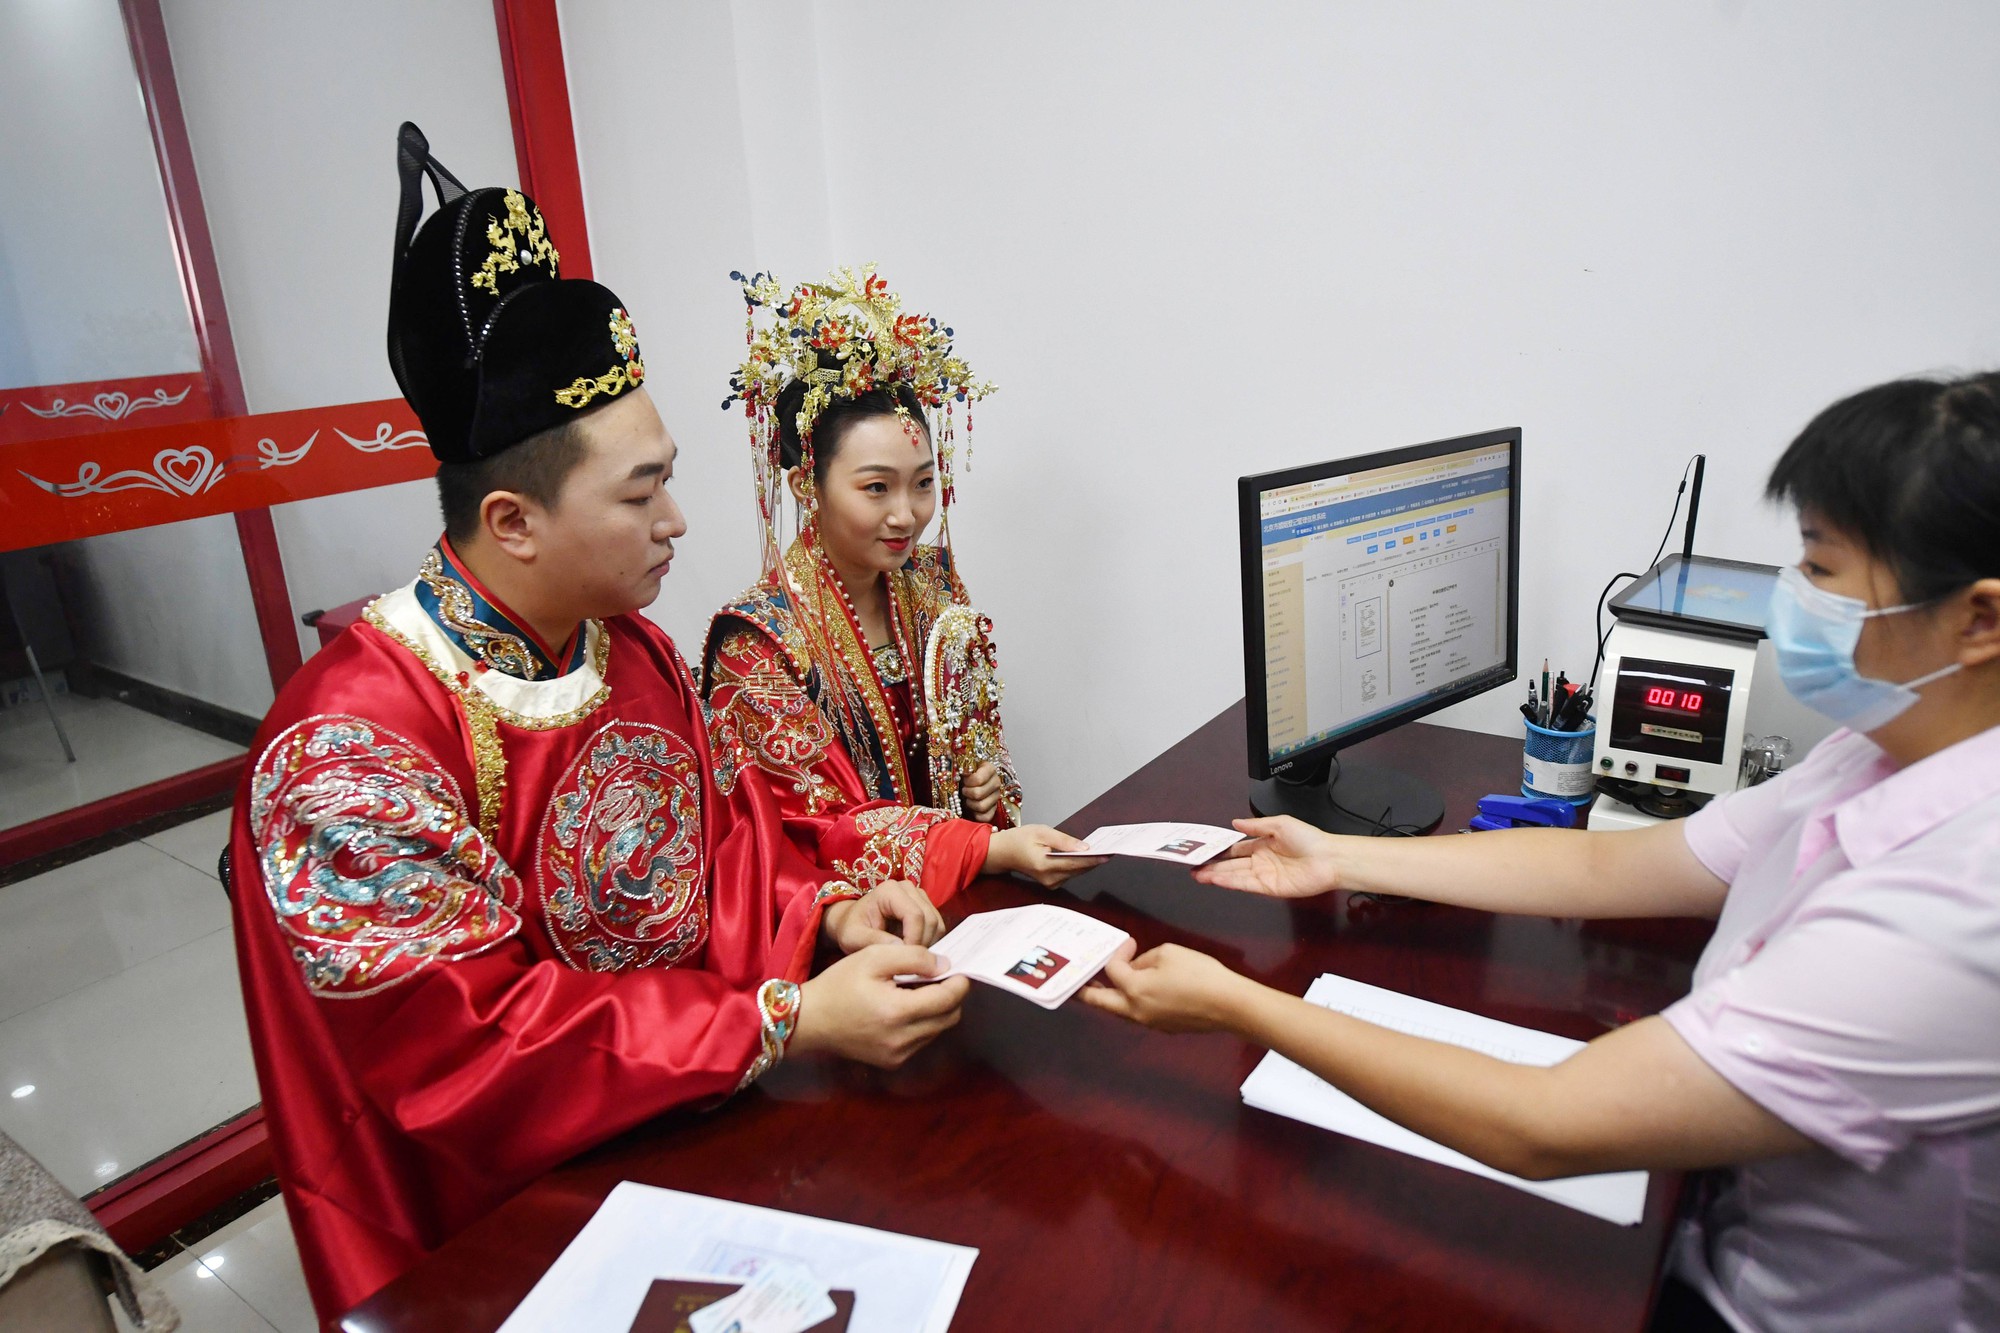 Trung Quốc: Các cặp đôi xếp hàng từ mờ sáng để đăng ký kết hôn đúng ngày Thất Tịch - Ảnh 3.